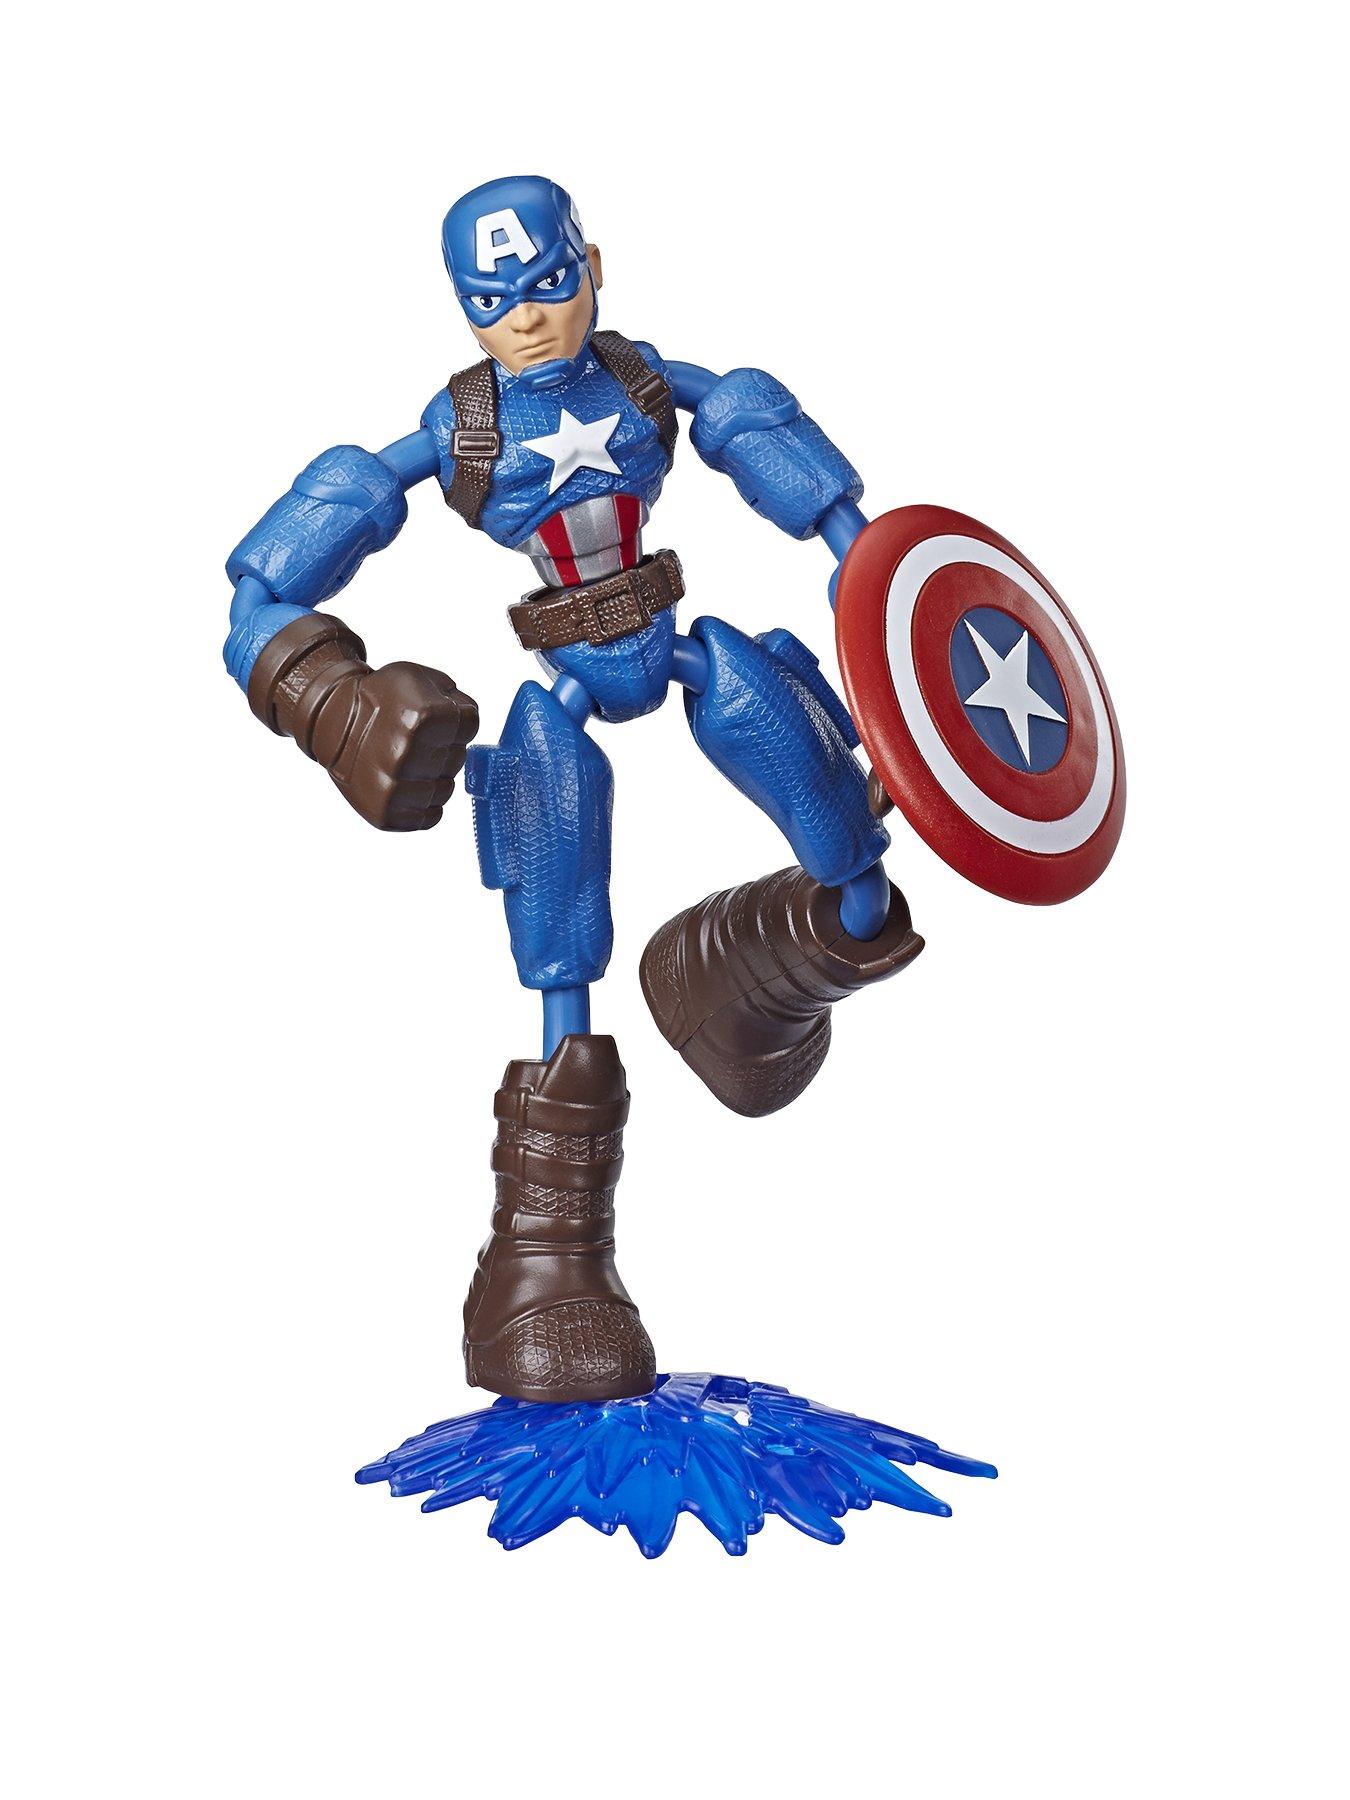 12/" Marvel Action Figure Universe Avengers Action Figure 30CM Super Hero PVC Toy